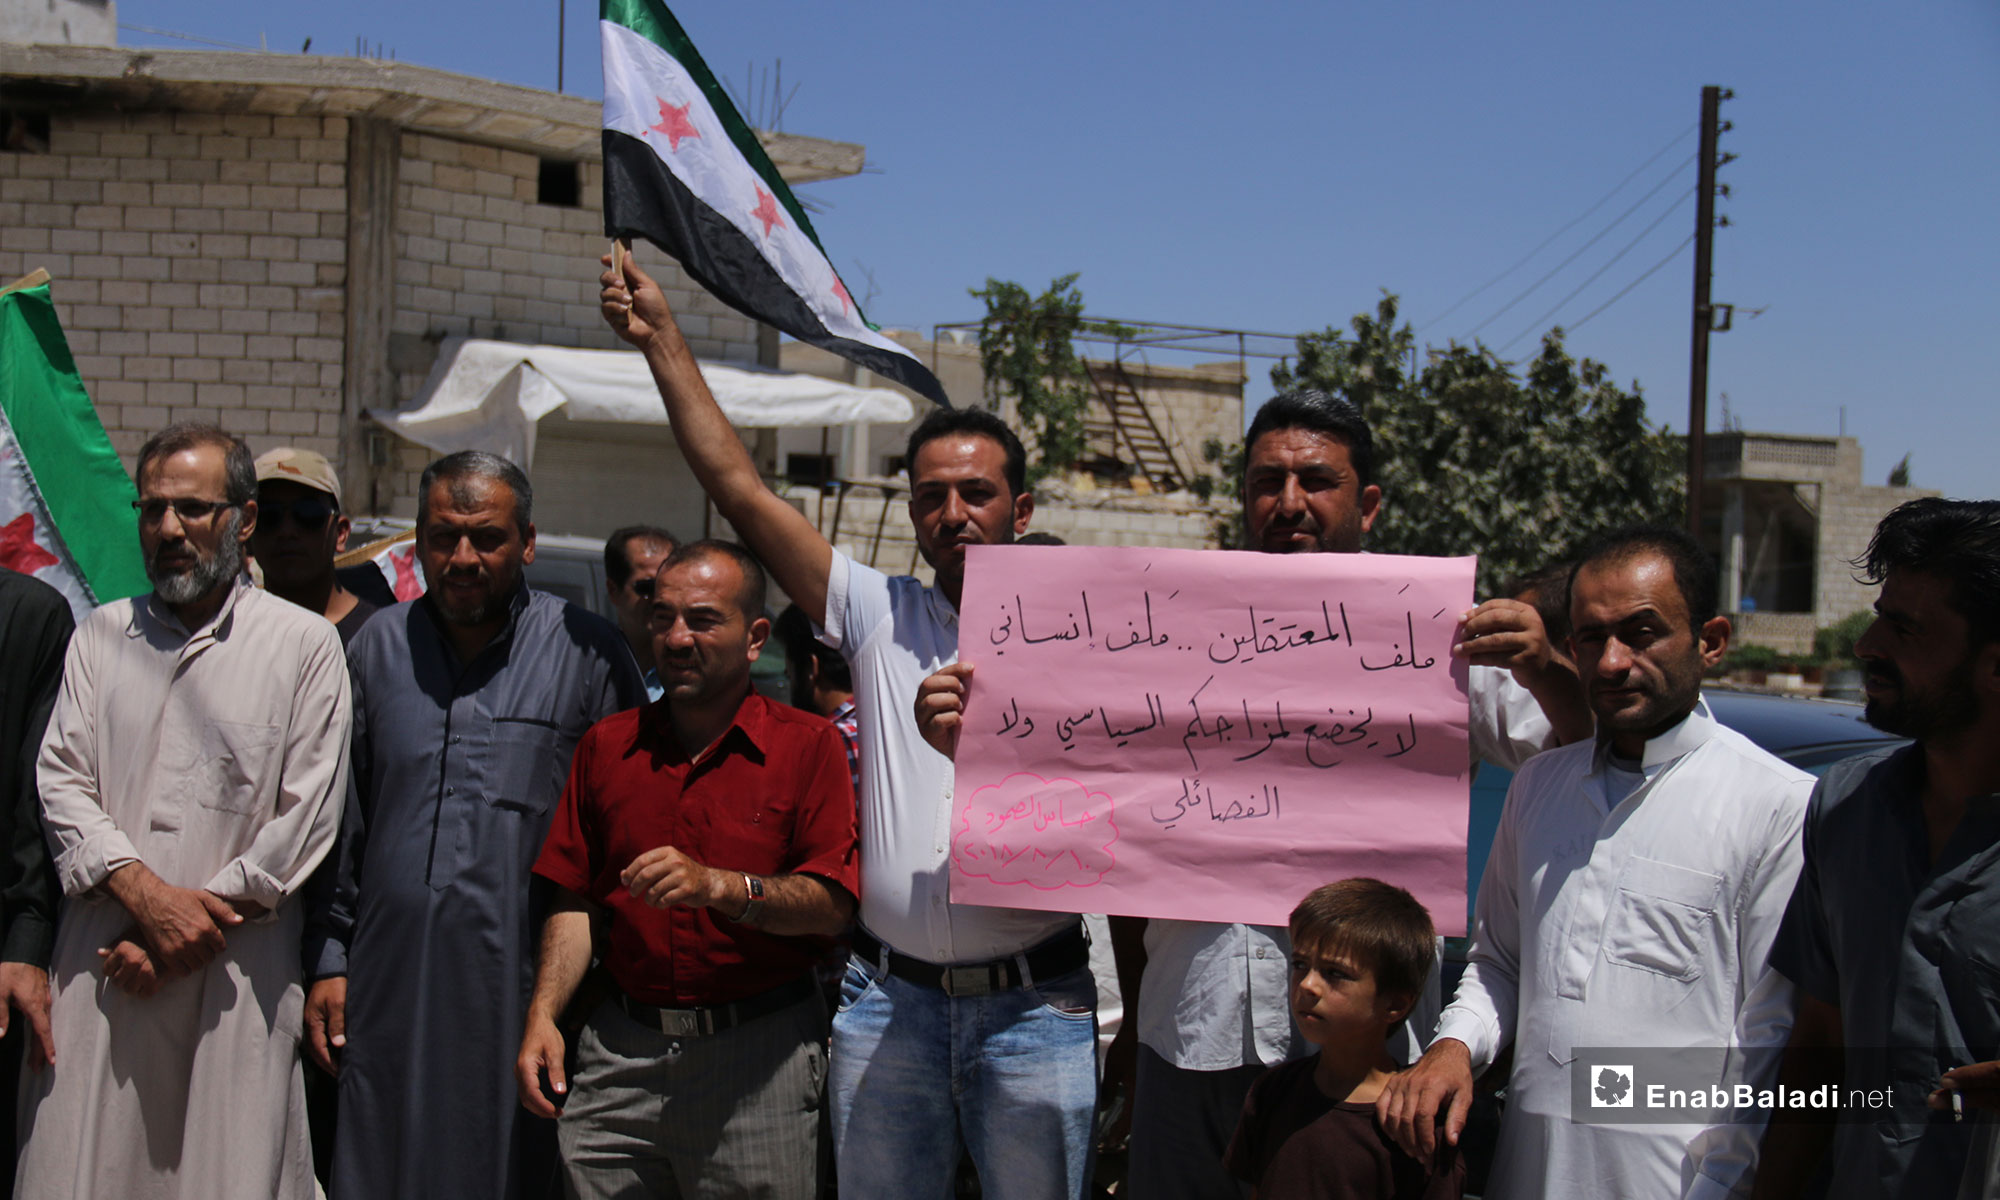 وقفة تضامنية لأجل المعتقلين السوريين في بلدة حاس بريف إدلب - 10 من آب 2018 (عنب بلدي)